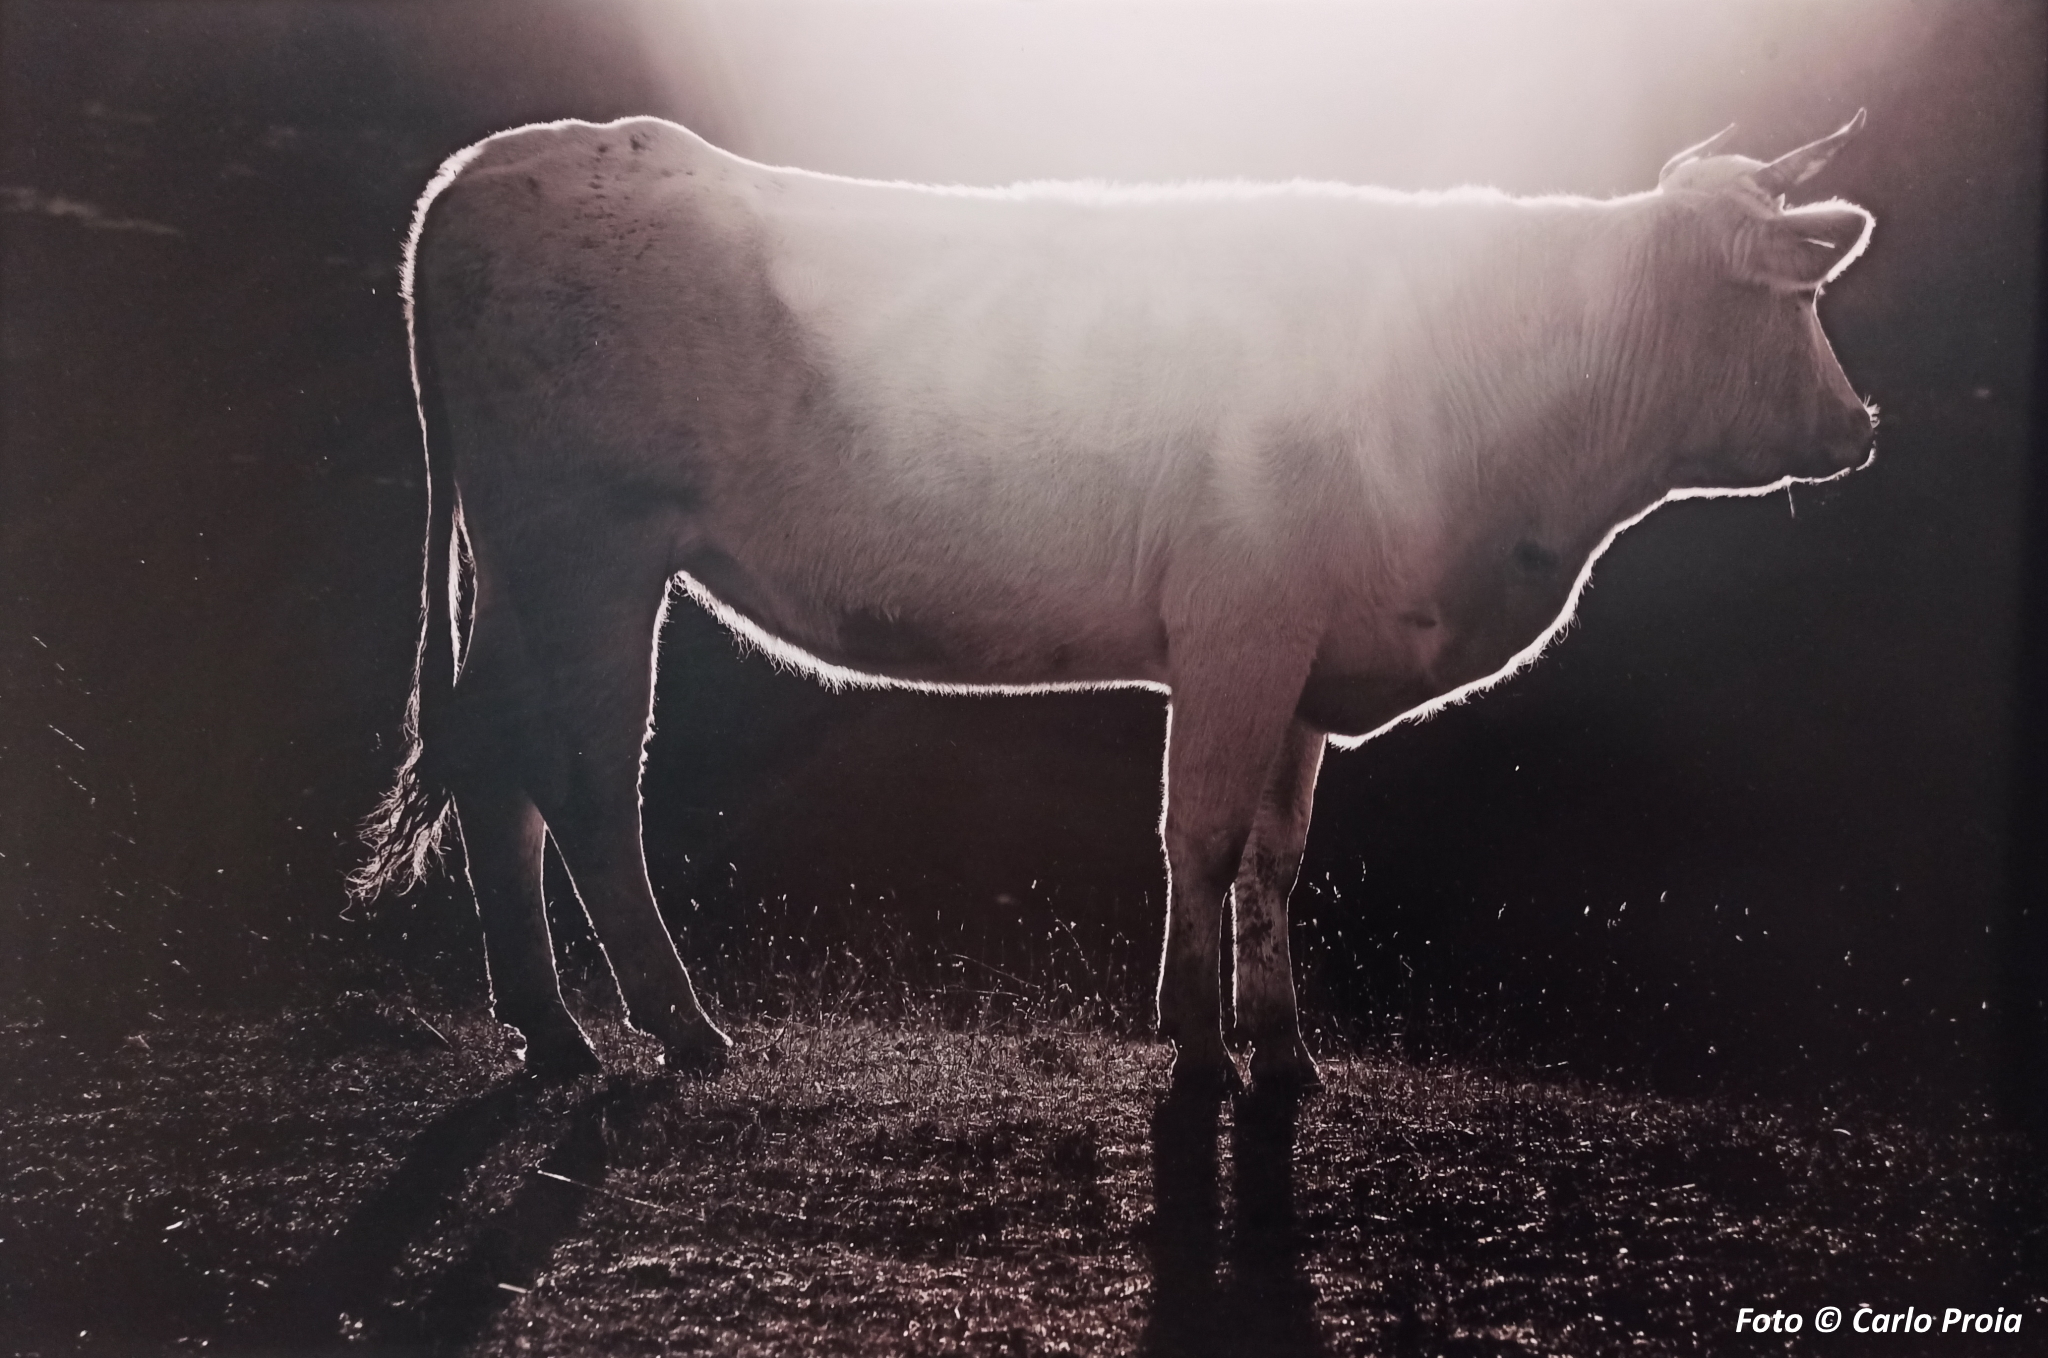 Una 'Vacca', al centro della foto è illuminata nella sua parte dorsale dalla luce solare (Foto Carlo Proia)